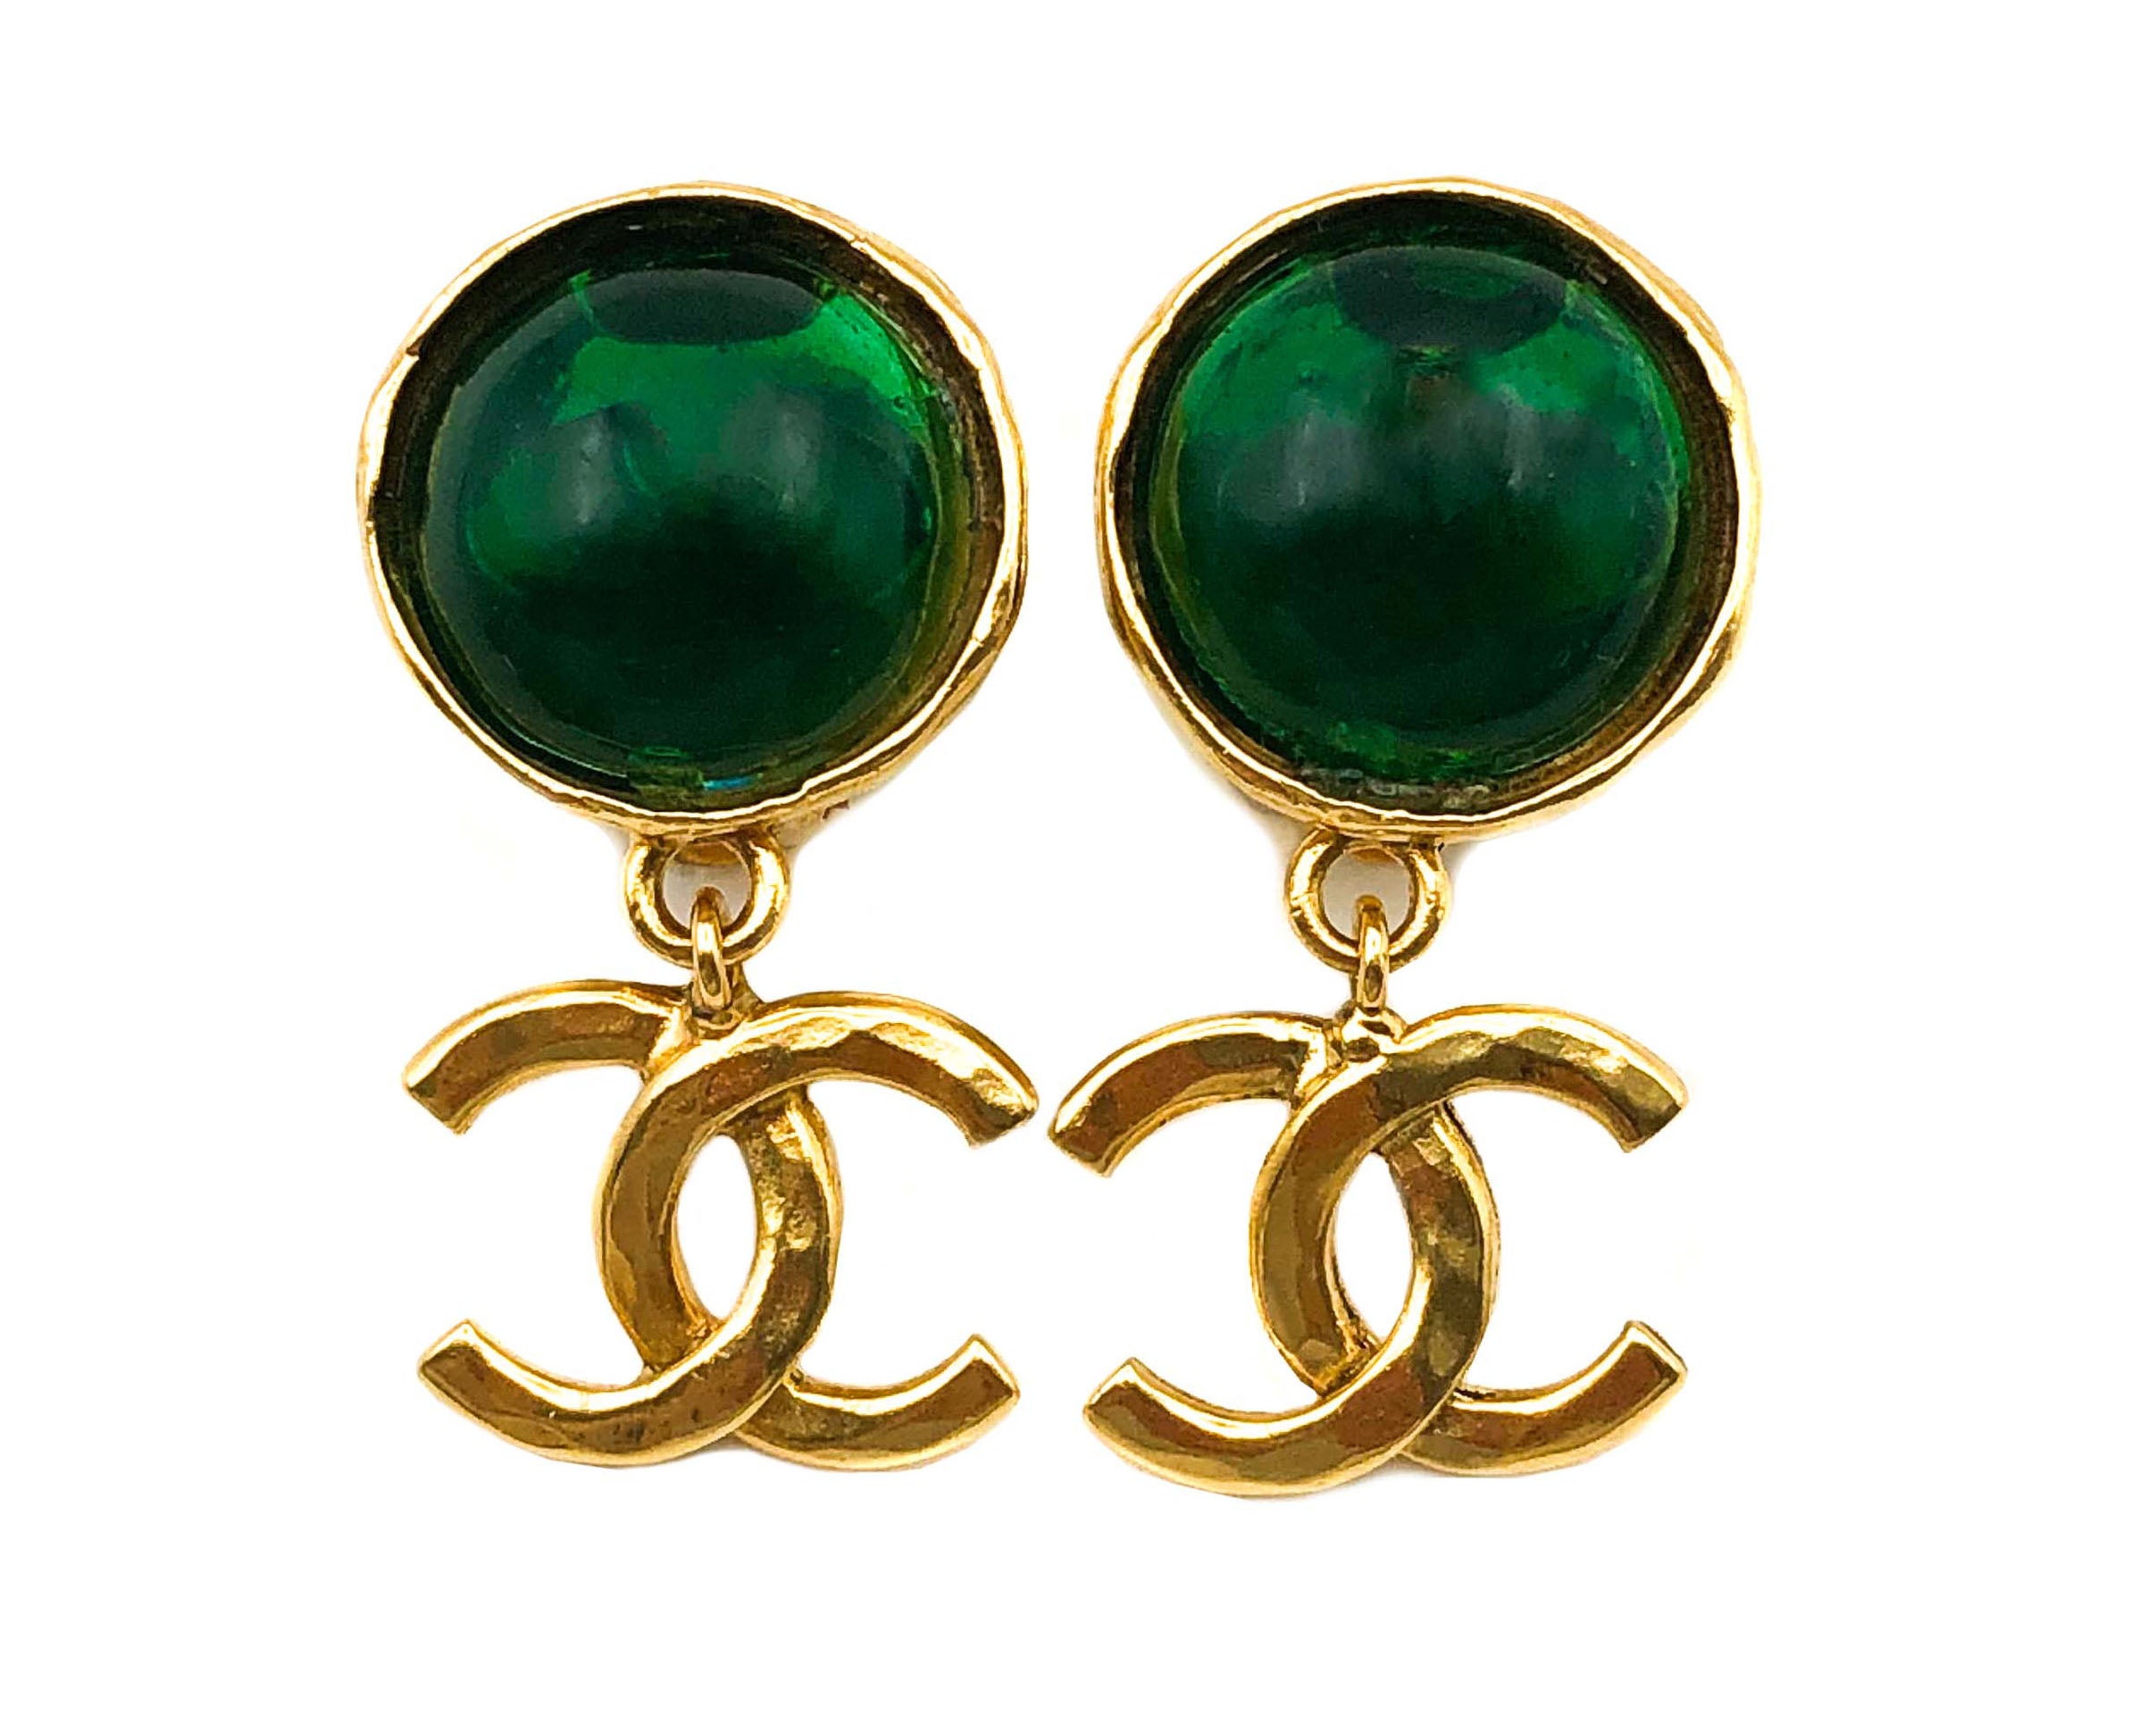 CHANEL, Jewelry, Vintage Chanel Statement Earrings